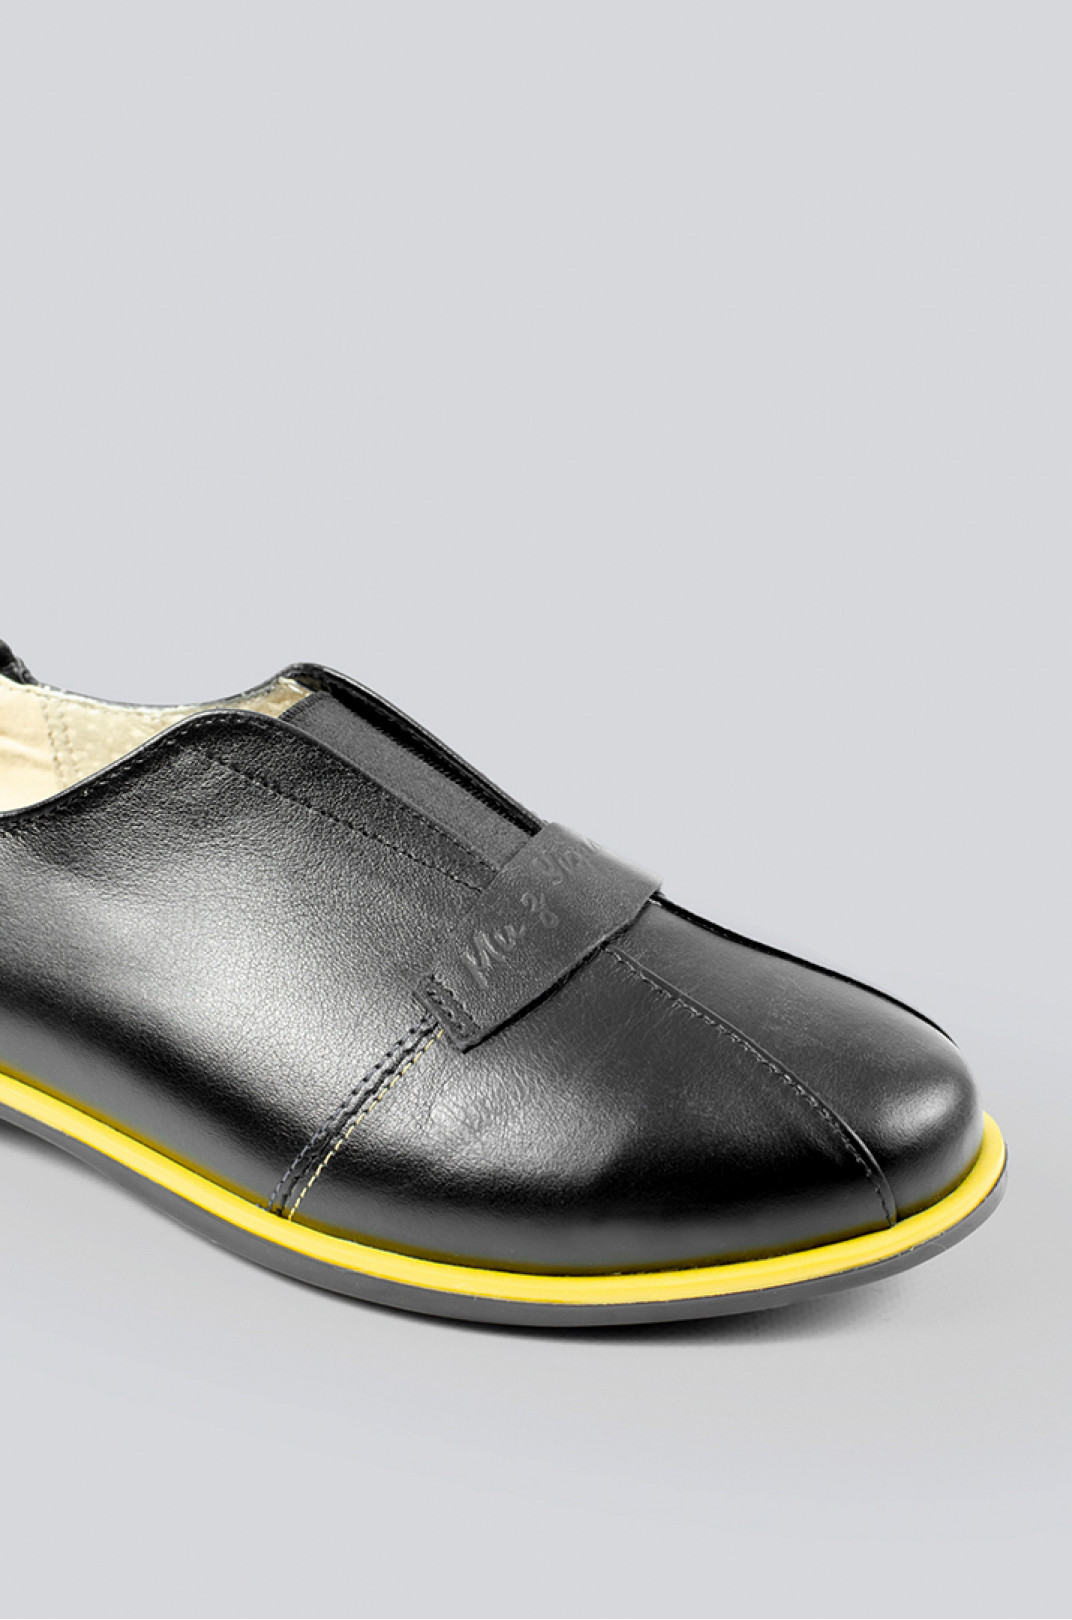 Туфлі чорні з жовтою каймою великих розмірів